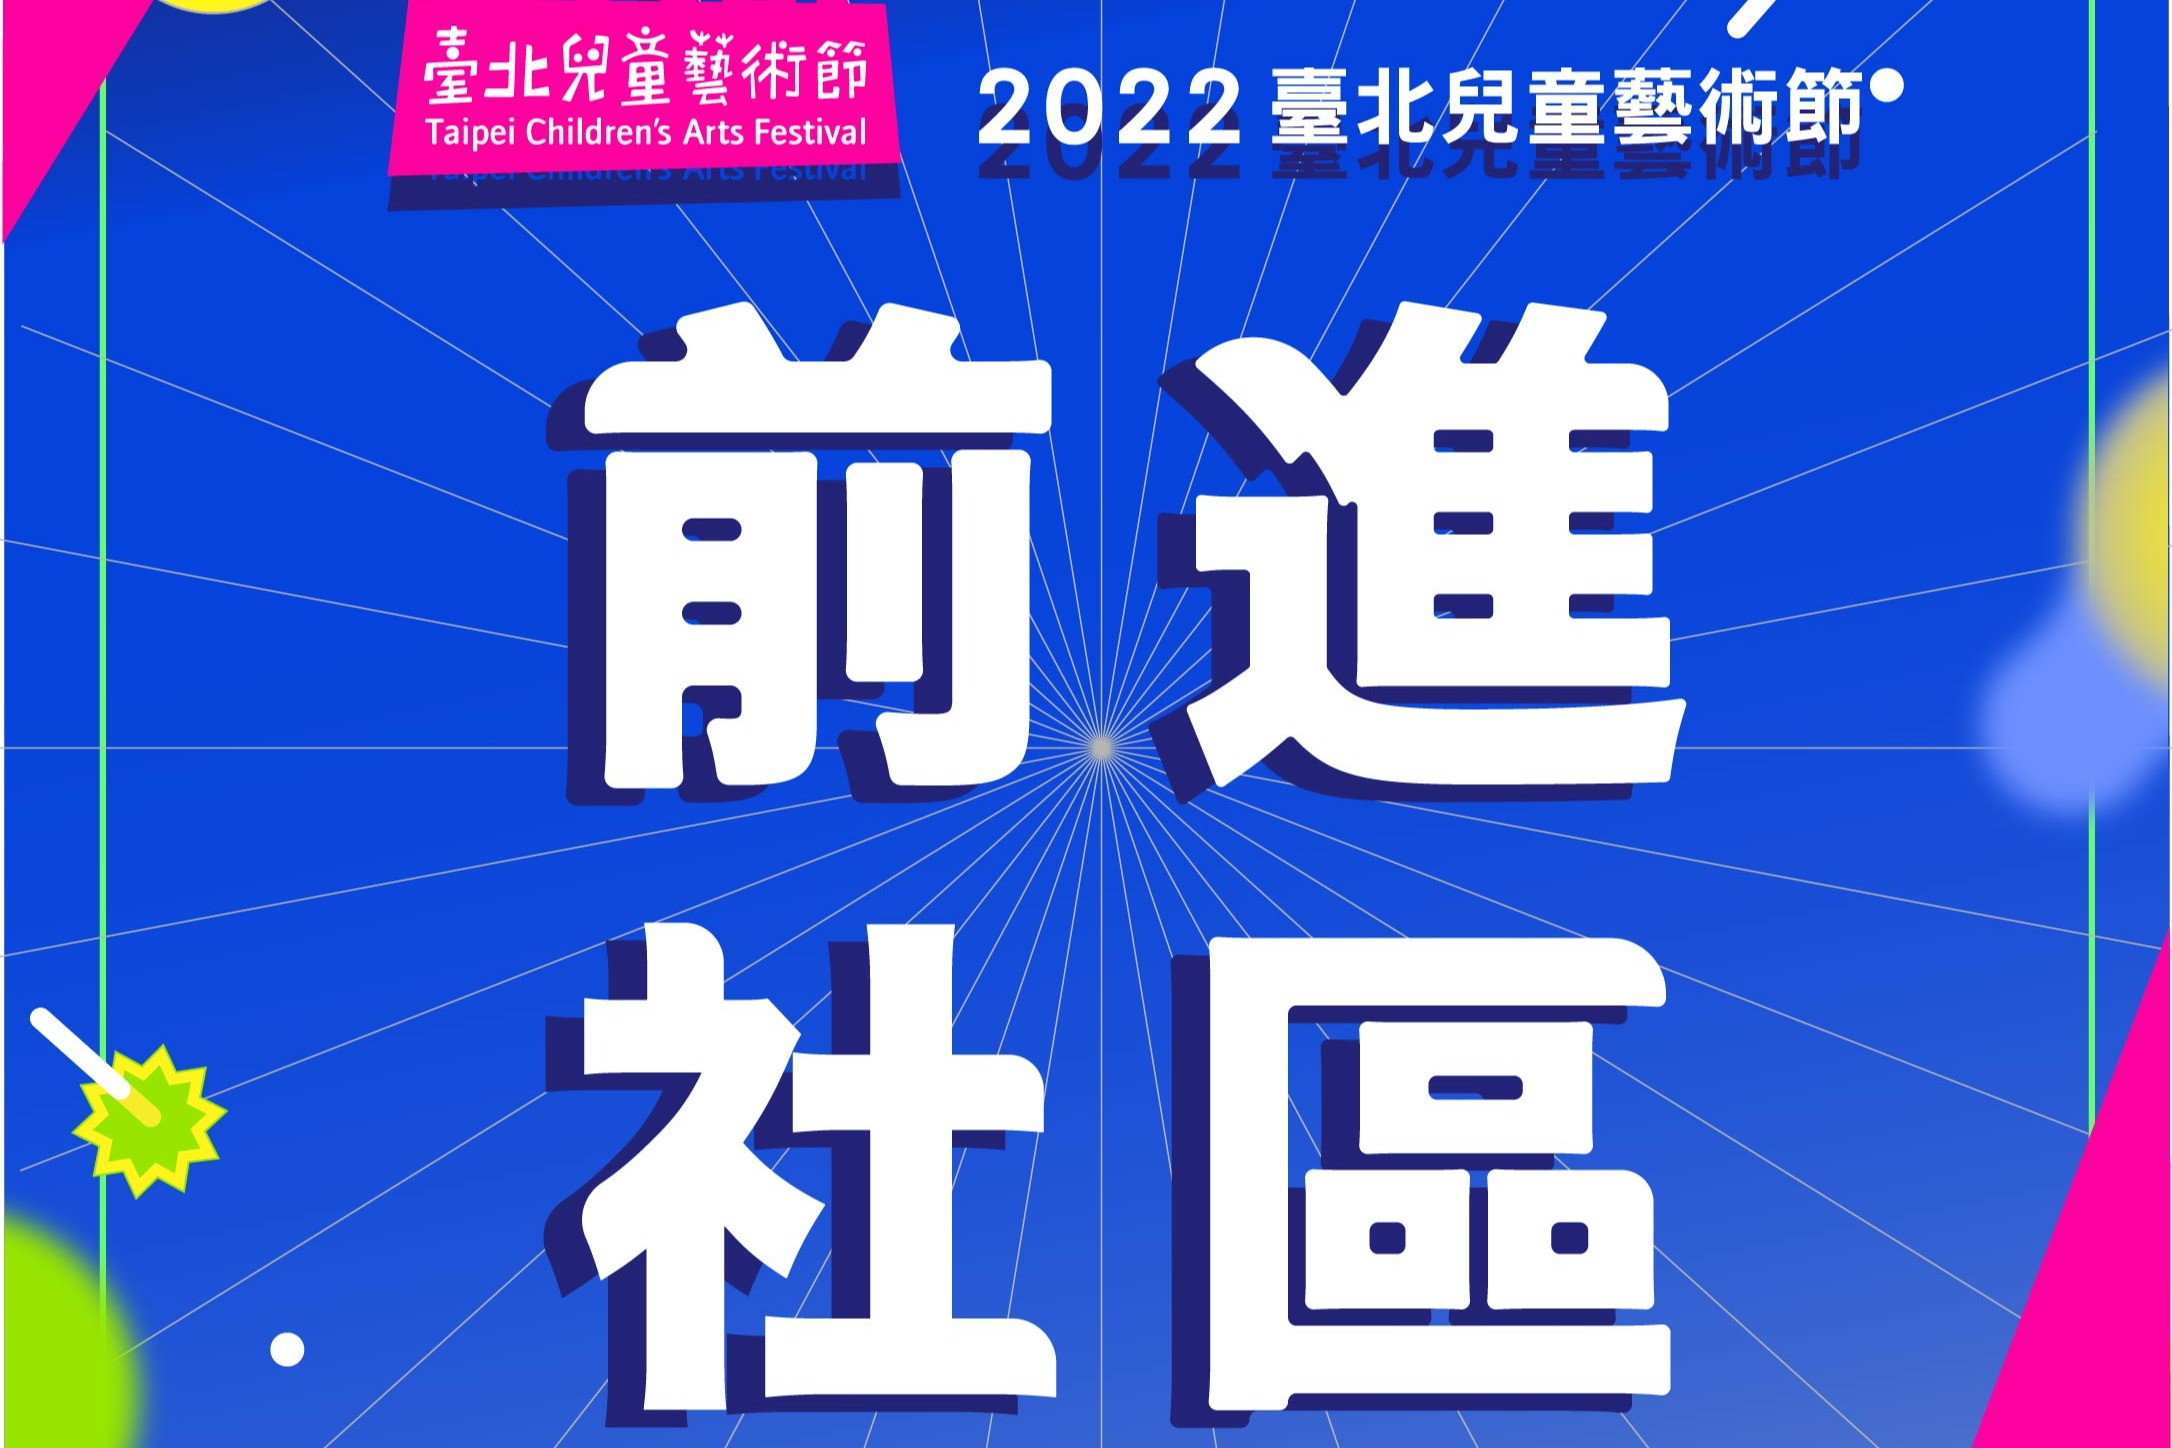 2022臺北兒童藝術節社區藝術演出入選團隊名單公告圖片